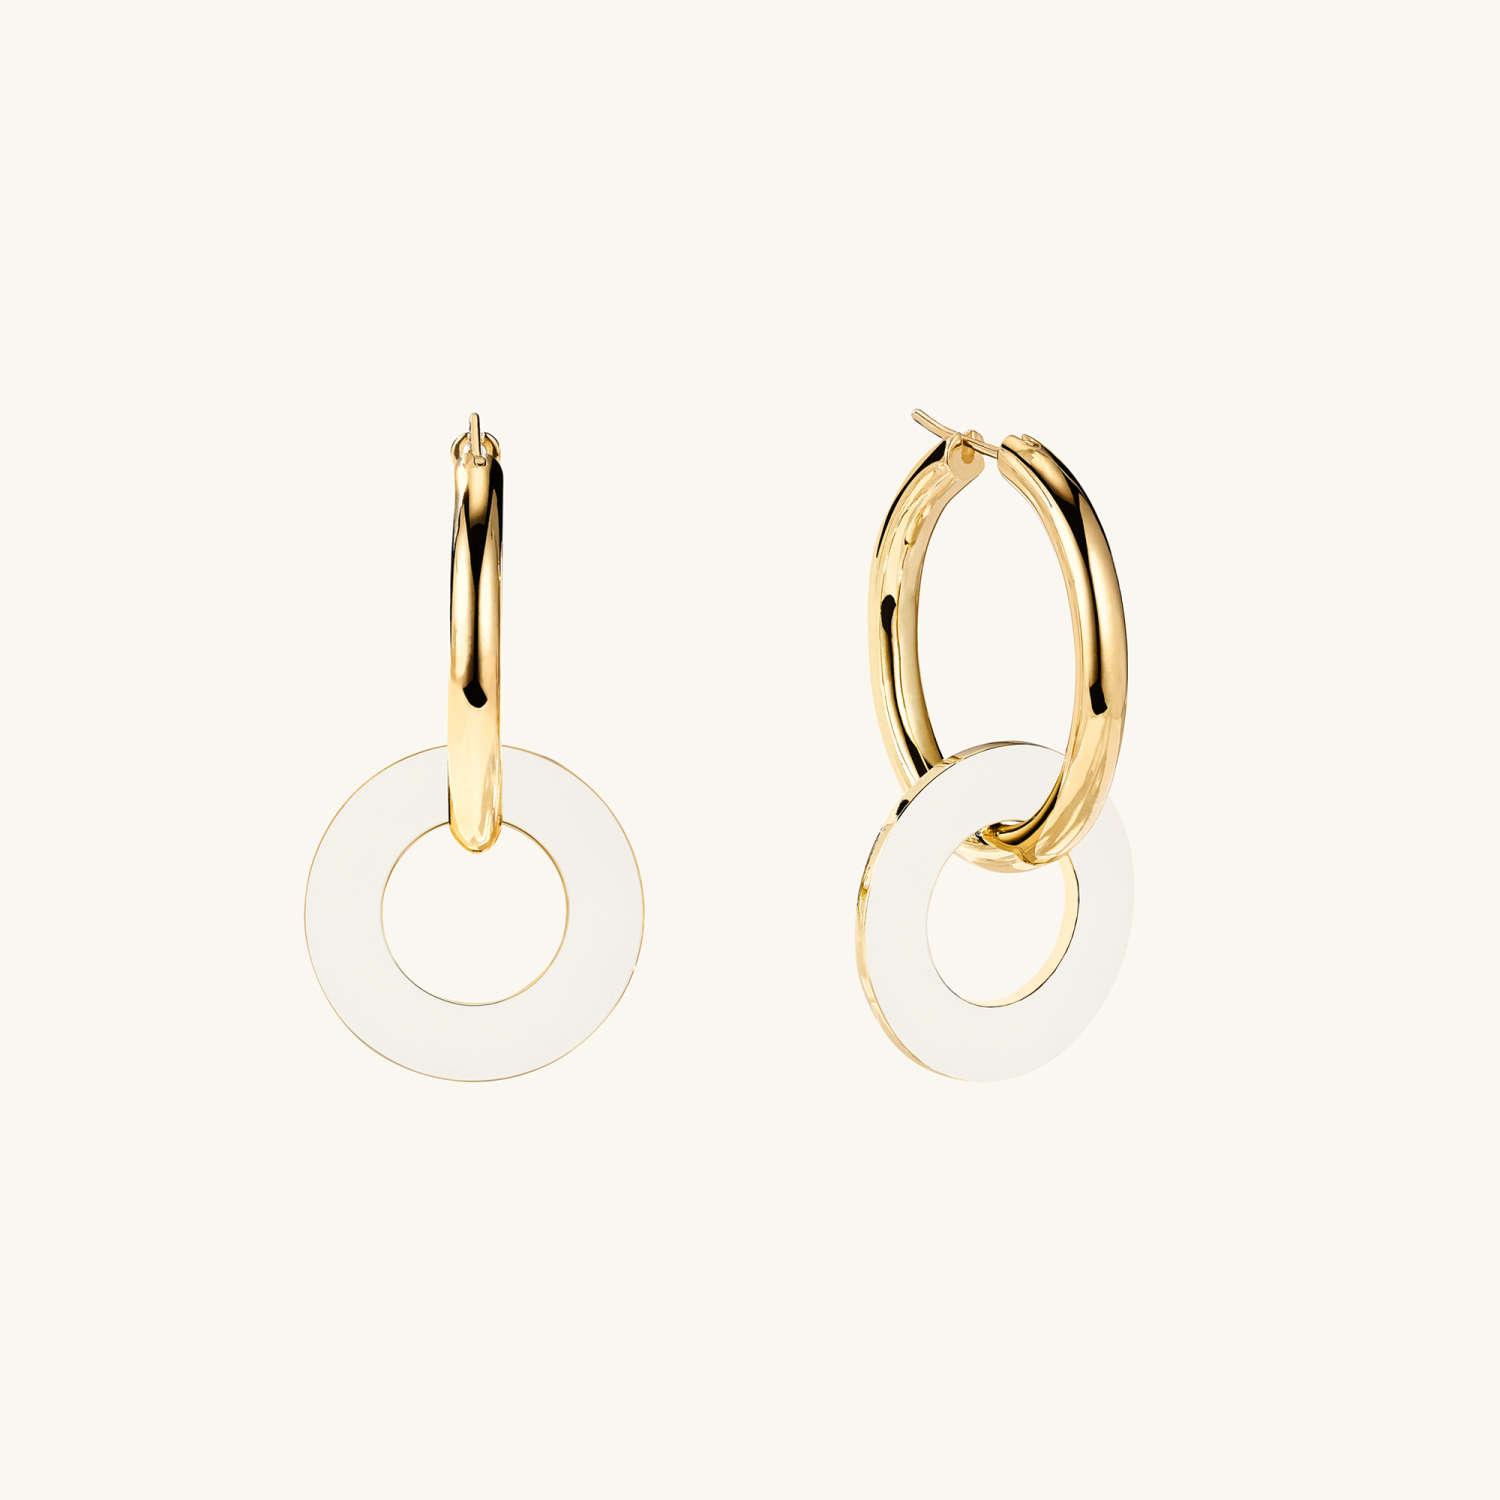 Mejuri Gold Vermeil Hoop Earrings: Chunky Large Hoops